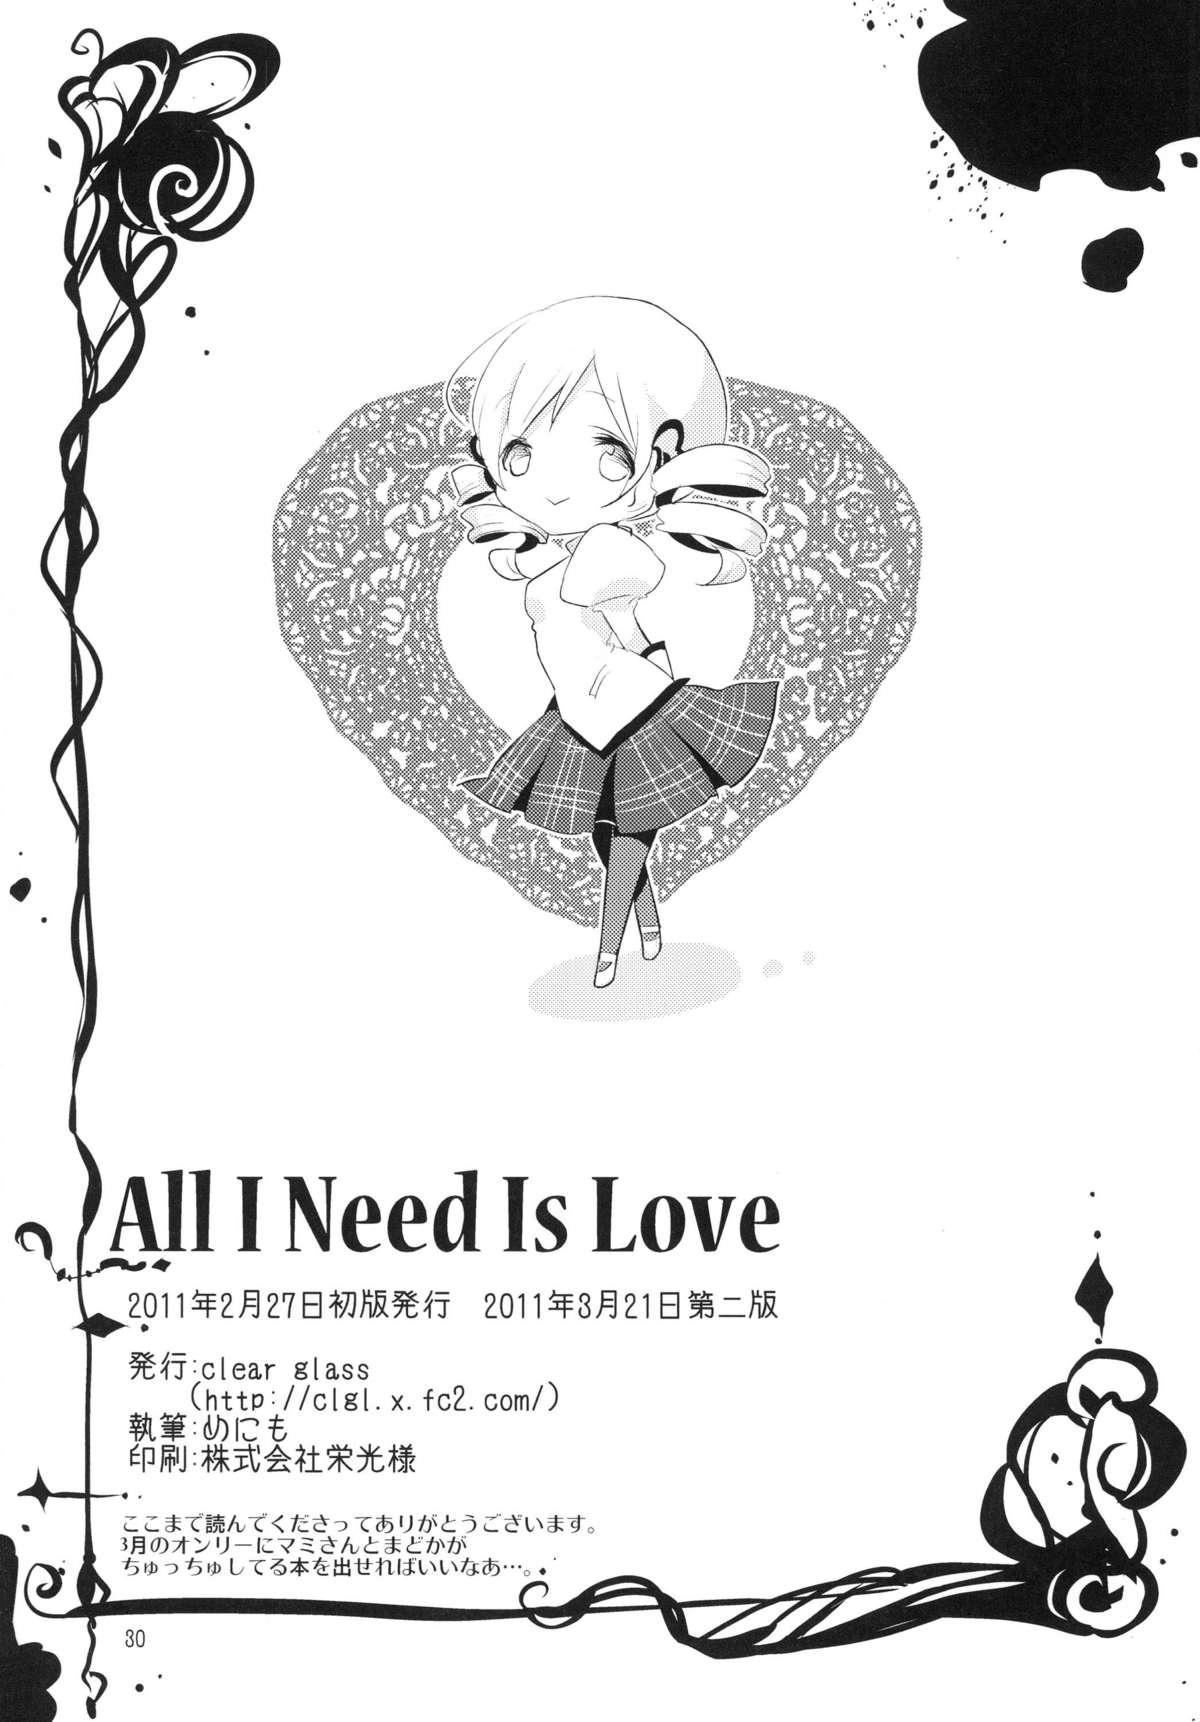 Bdsm All I Need Is Love - Puella magi madoka magica Hindi - Page 30